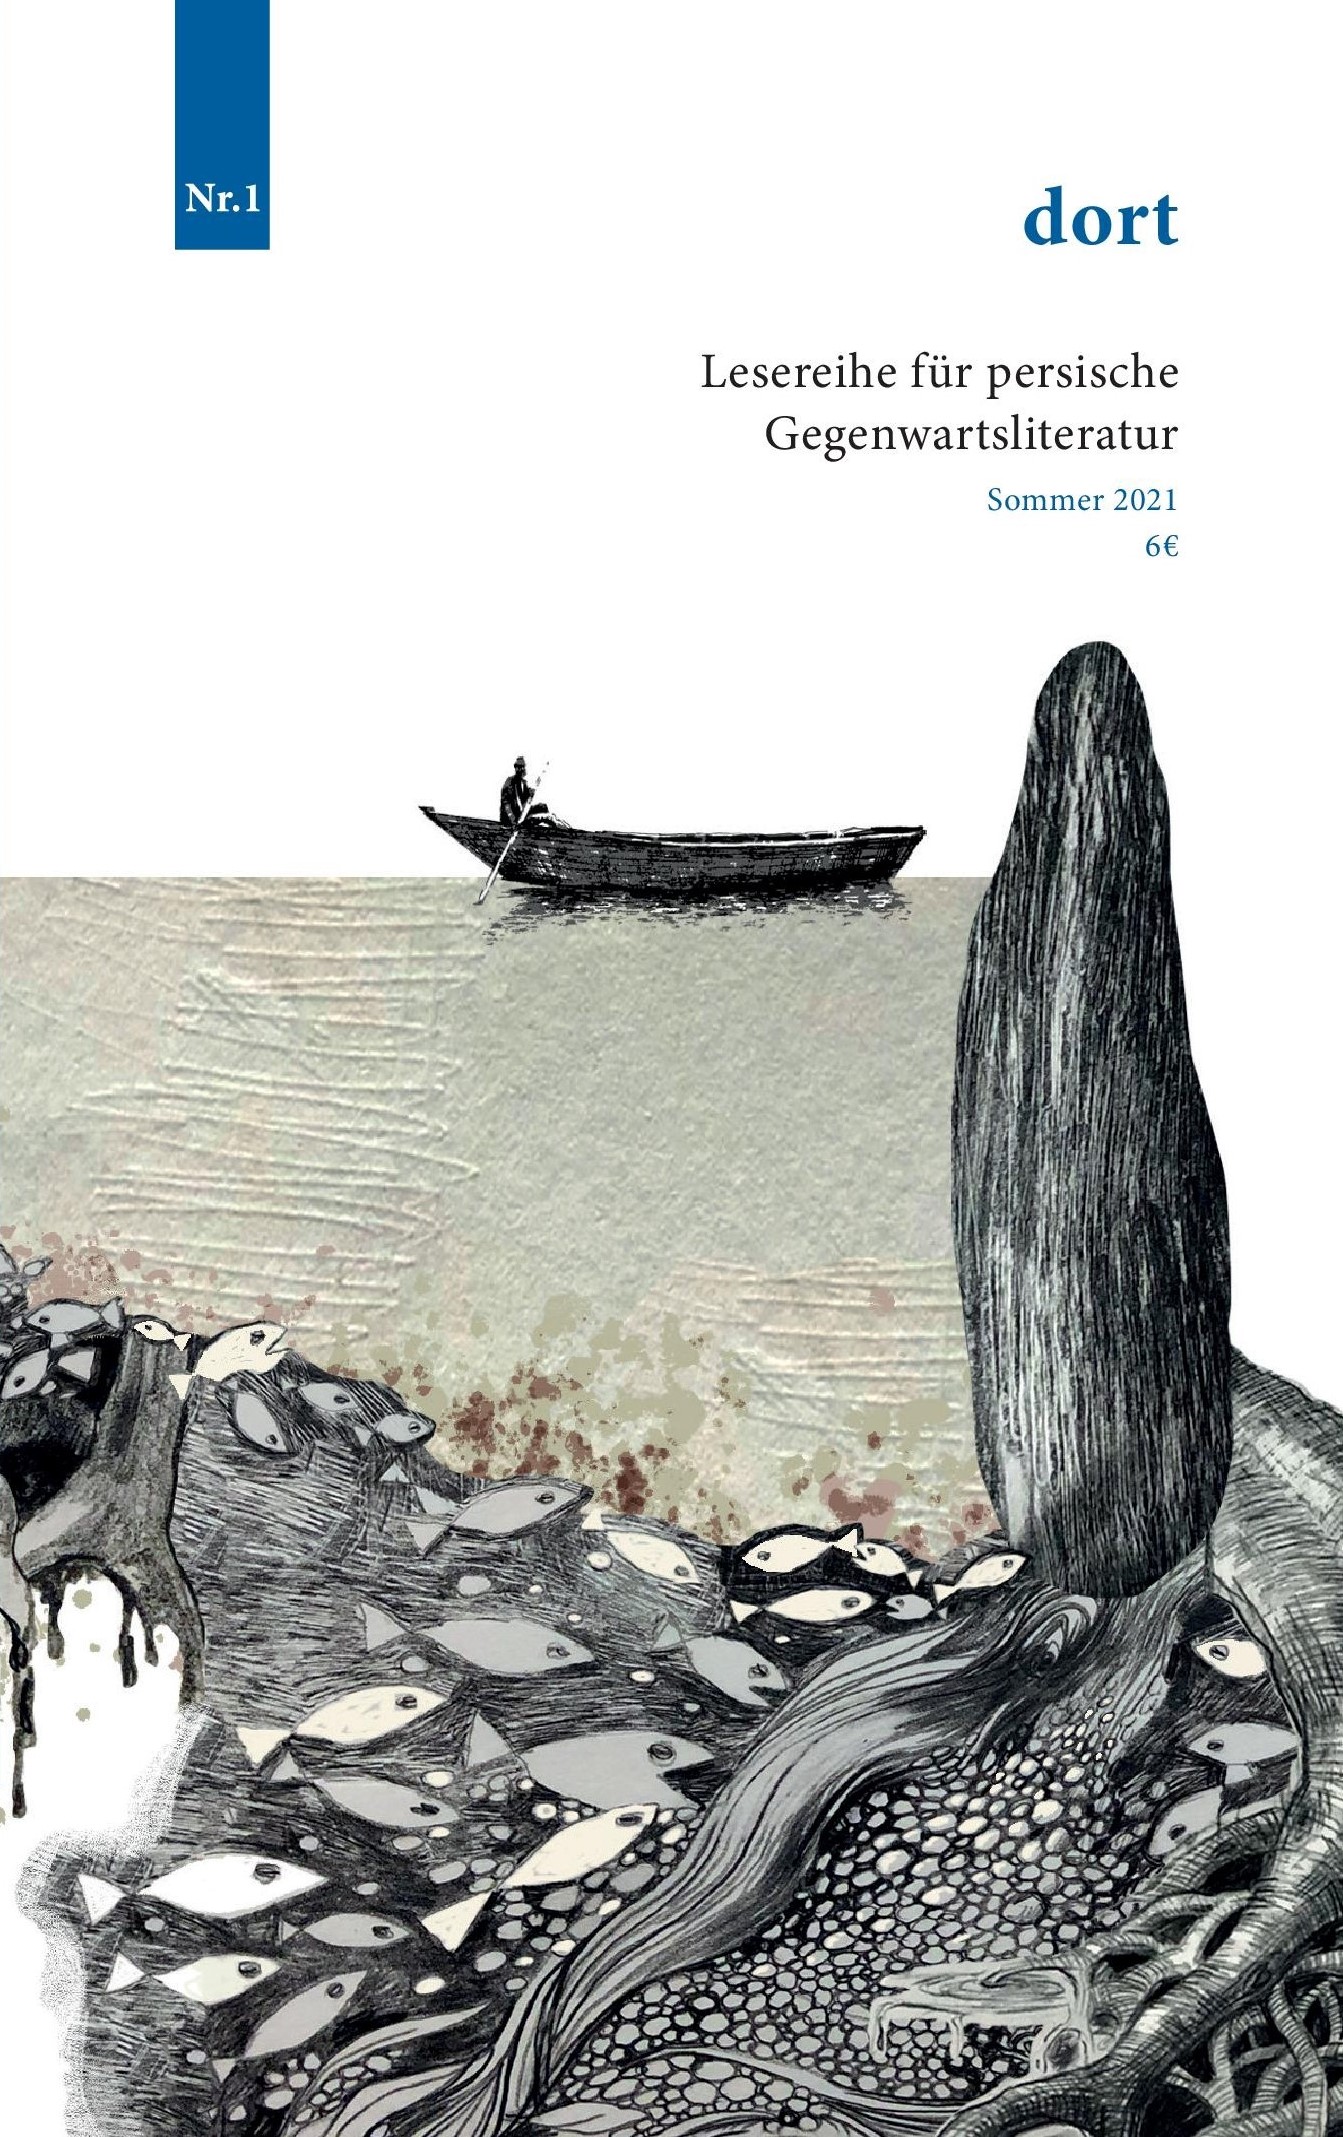 Cover des Magazins dort für persische Gegenwartsliteratur; Quelle: Verlag